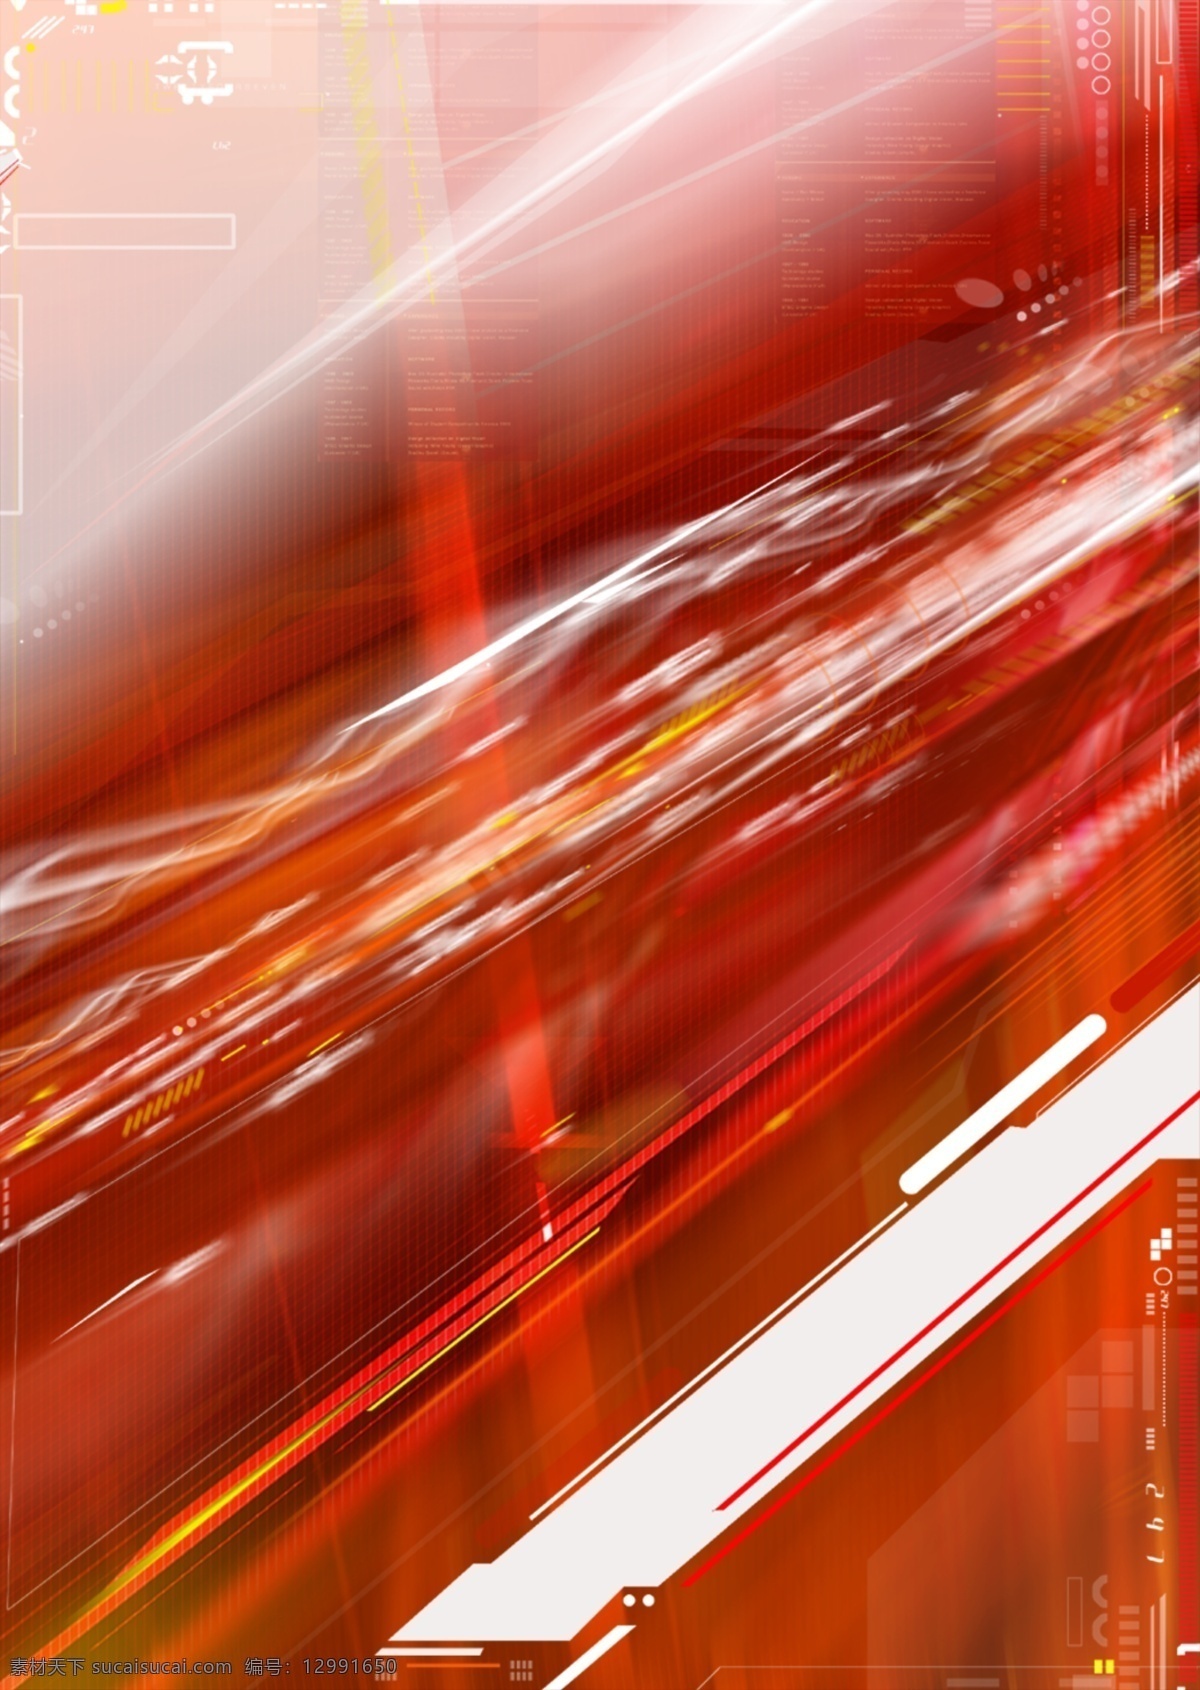 红色 速度 数码 游戏背景 分层 3d 抽象 动感 红色底纹 后现代 科技 力量 梦幻 前卫 游戏背景设计 异度空间 艺术 张力 原创设计 其他原创设计